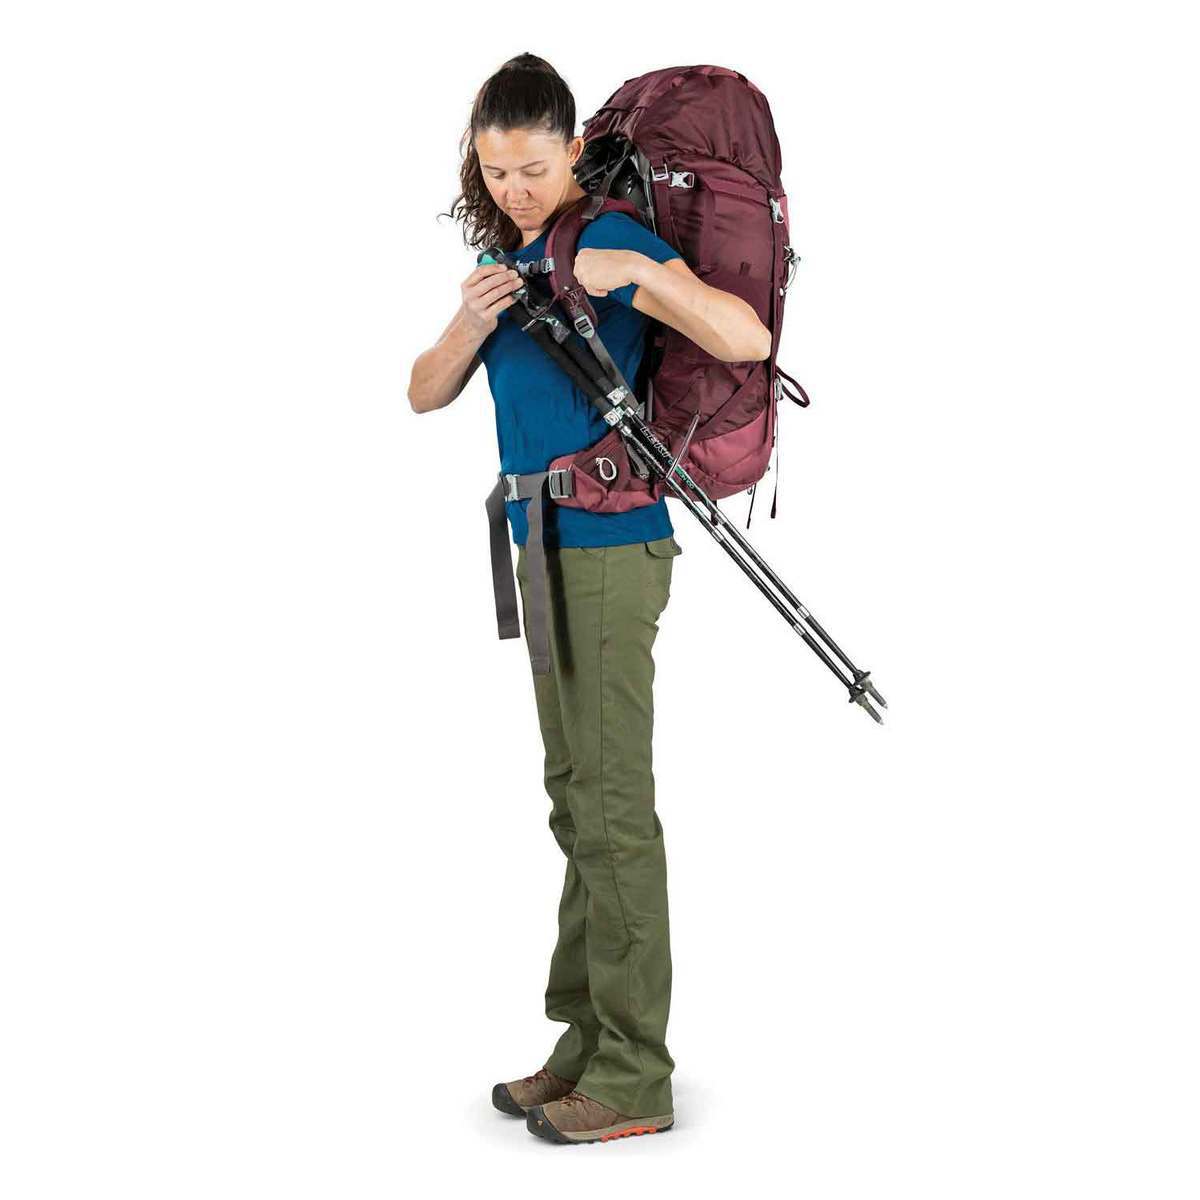 Osprey Viva 65 Liter Women's Backpacking Pack - Titan Red | Sportsman's Warehouse